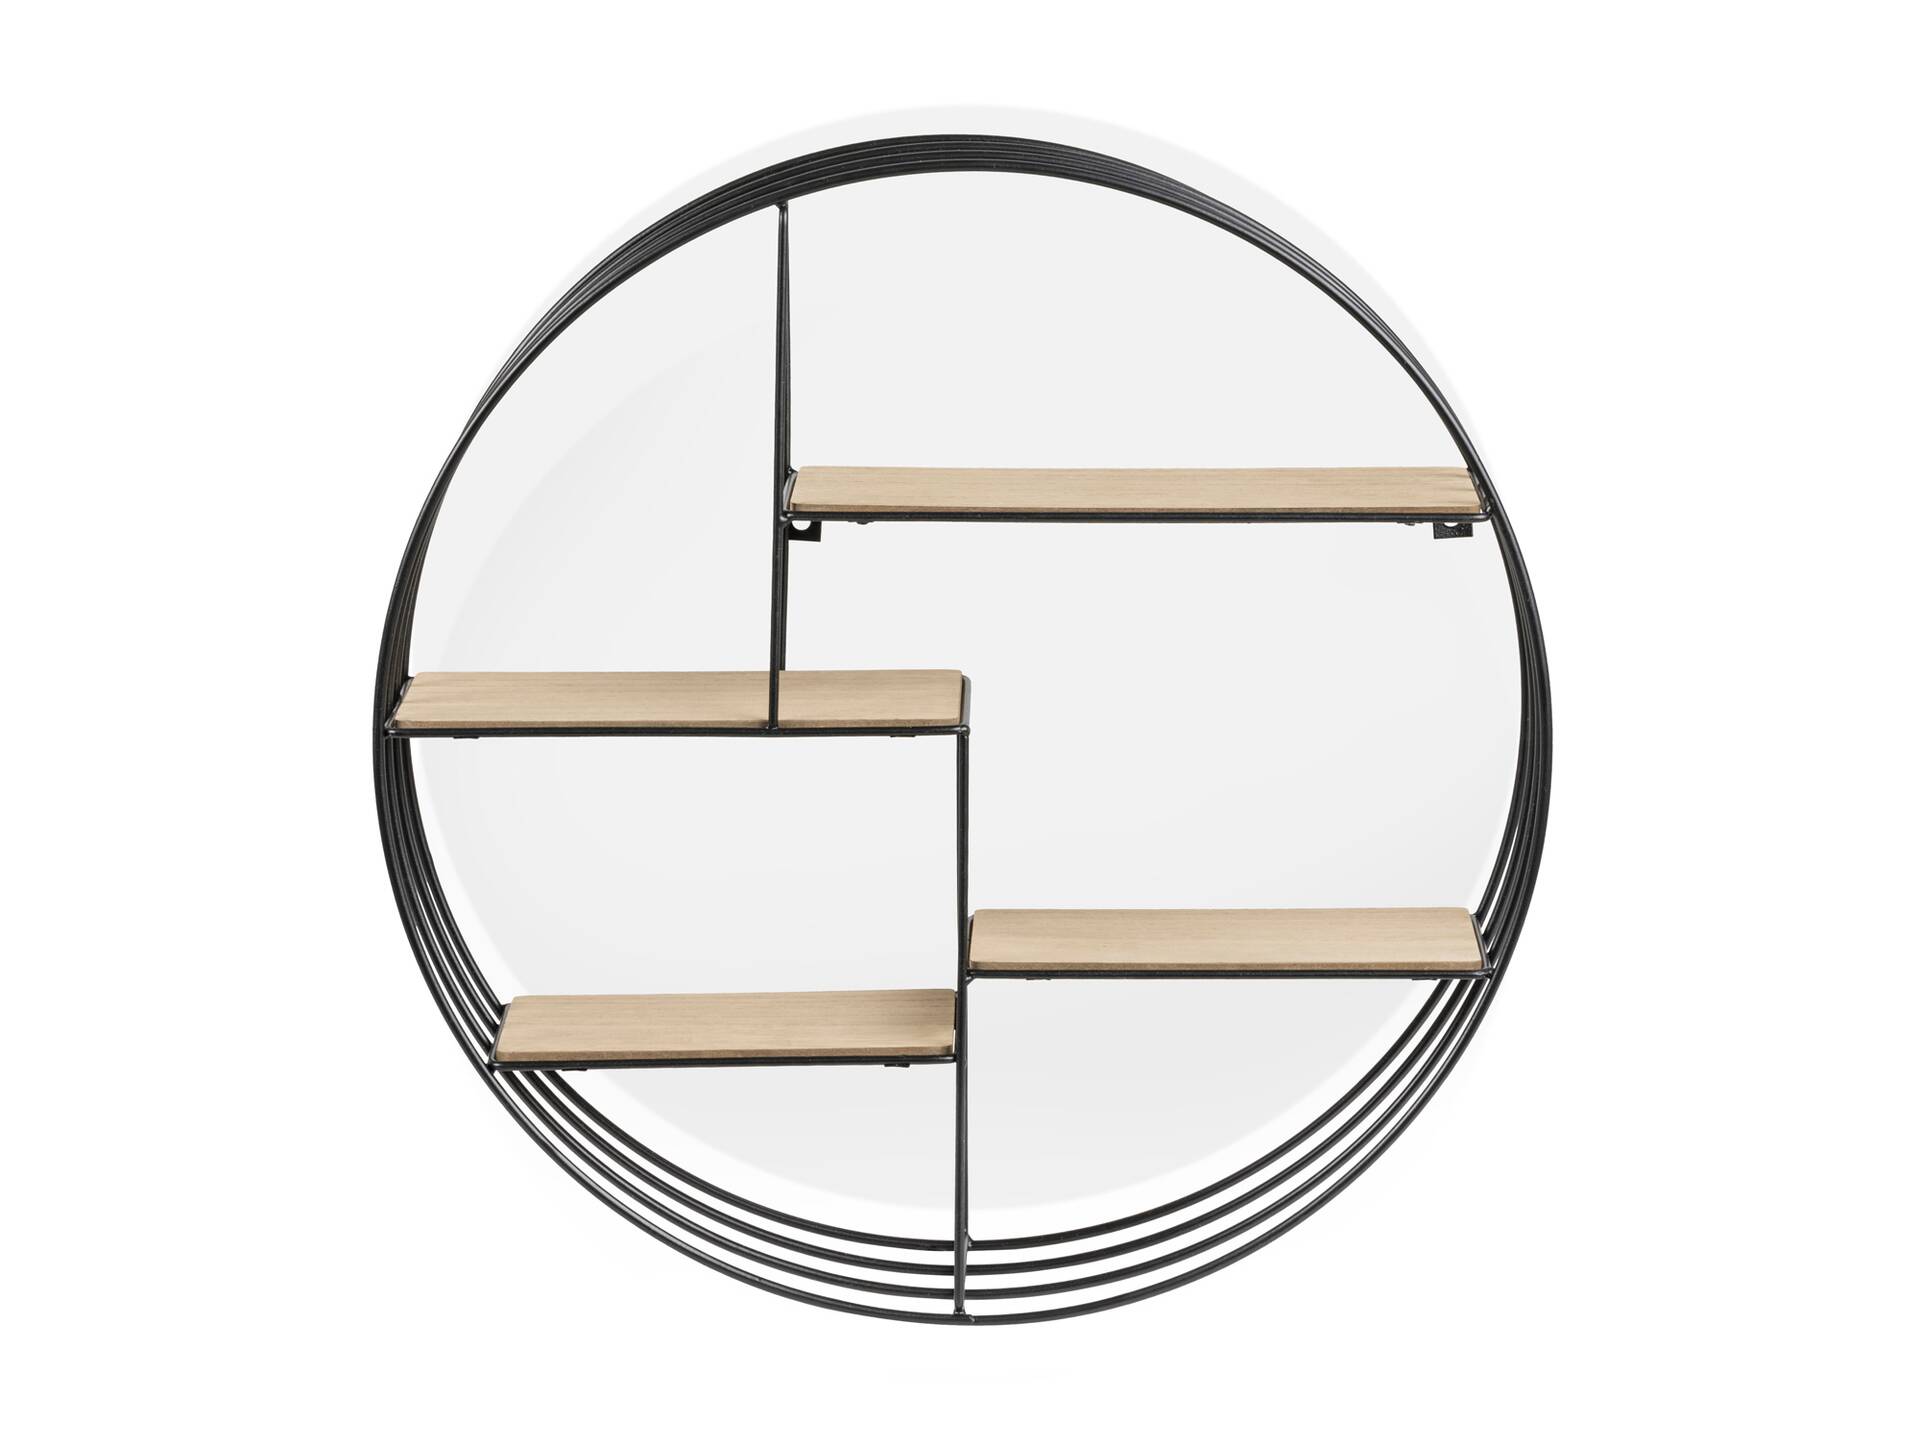 DANKO Wandregal mit 4 Ablageböden, Material Dekorspanplatte/Metall schwarz